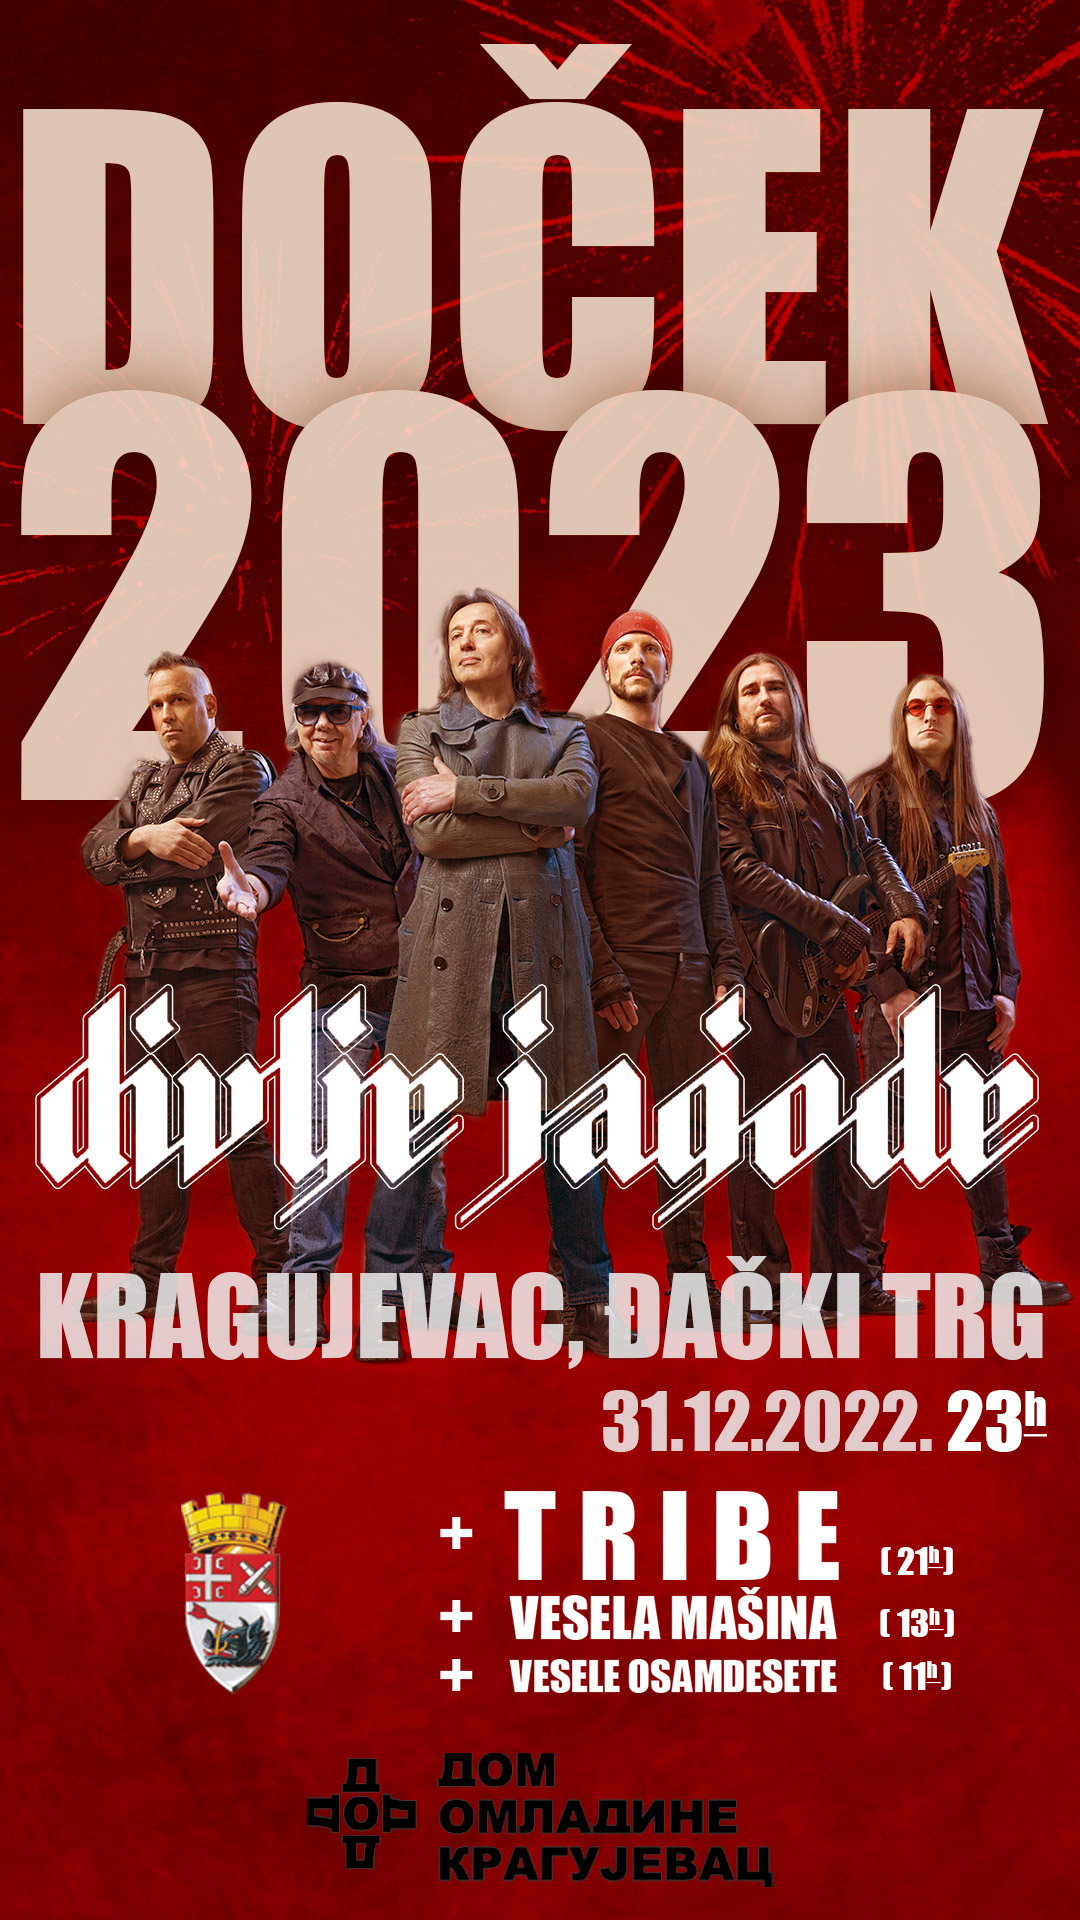 Divlje-Jagode-docek2023-KG—IG-Story-0